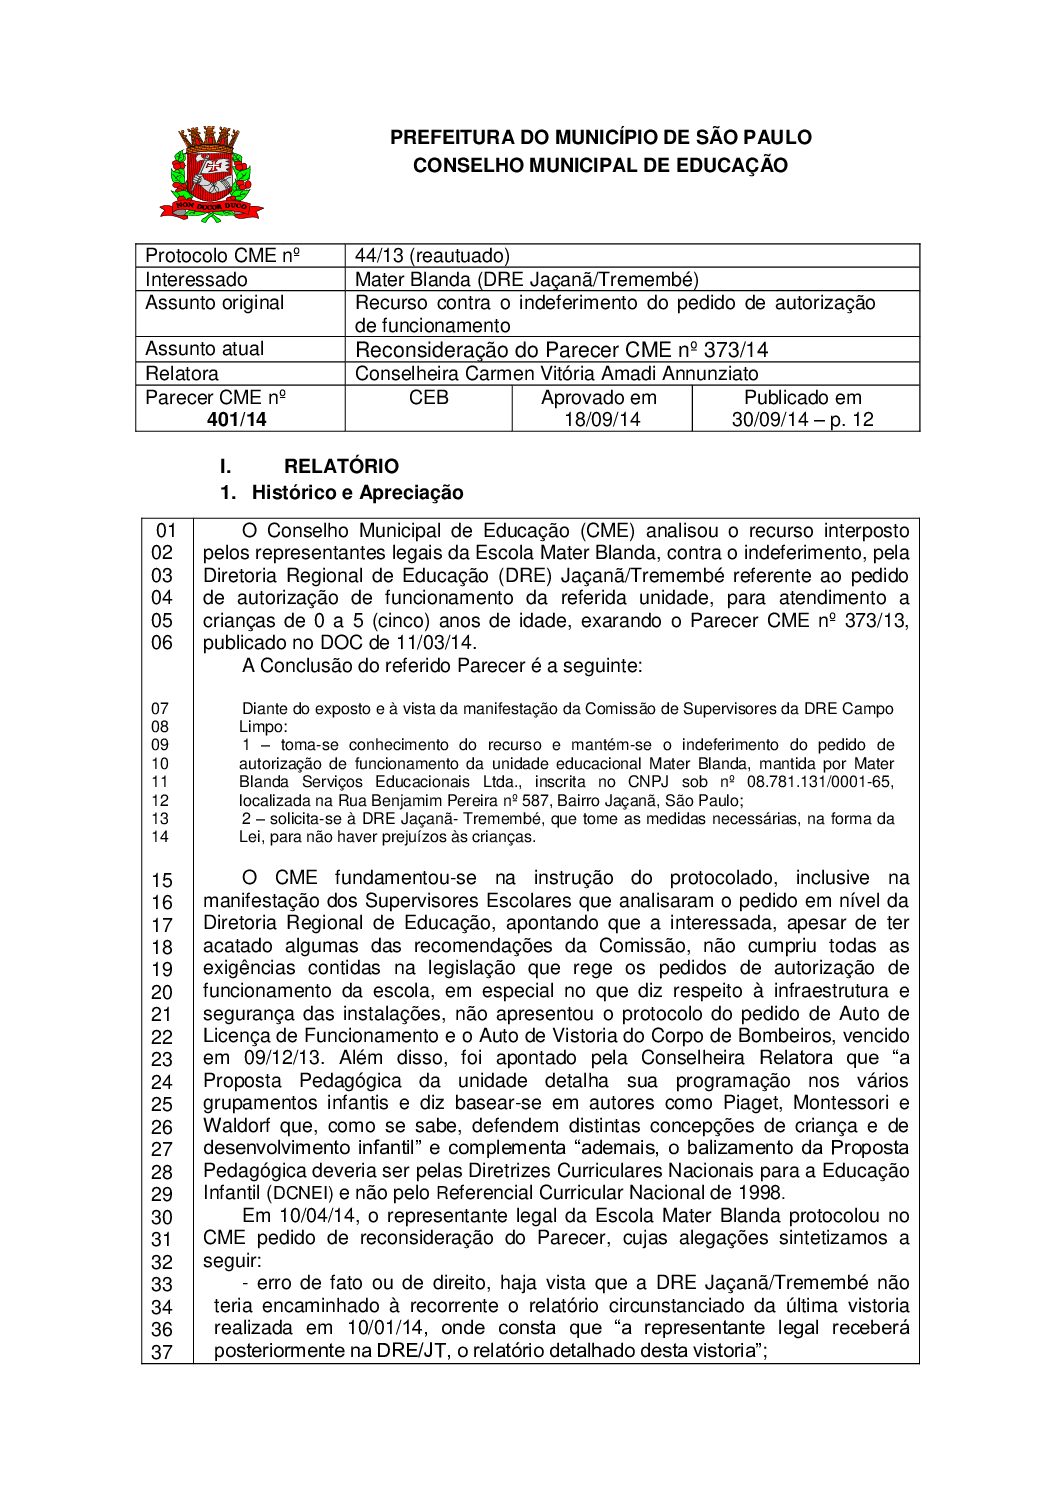 Parecer CME nº 401/2014 - Mater Blanda (DRE Jaçanã/Tremembé) - Recurso contra o indeferimento do pedido de autorização de funcionamento 